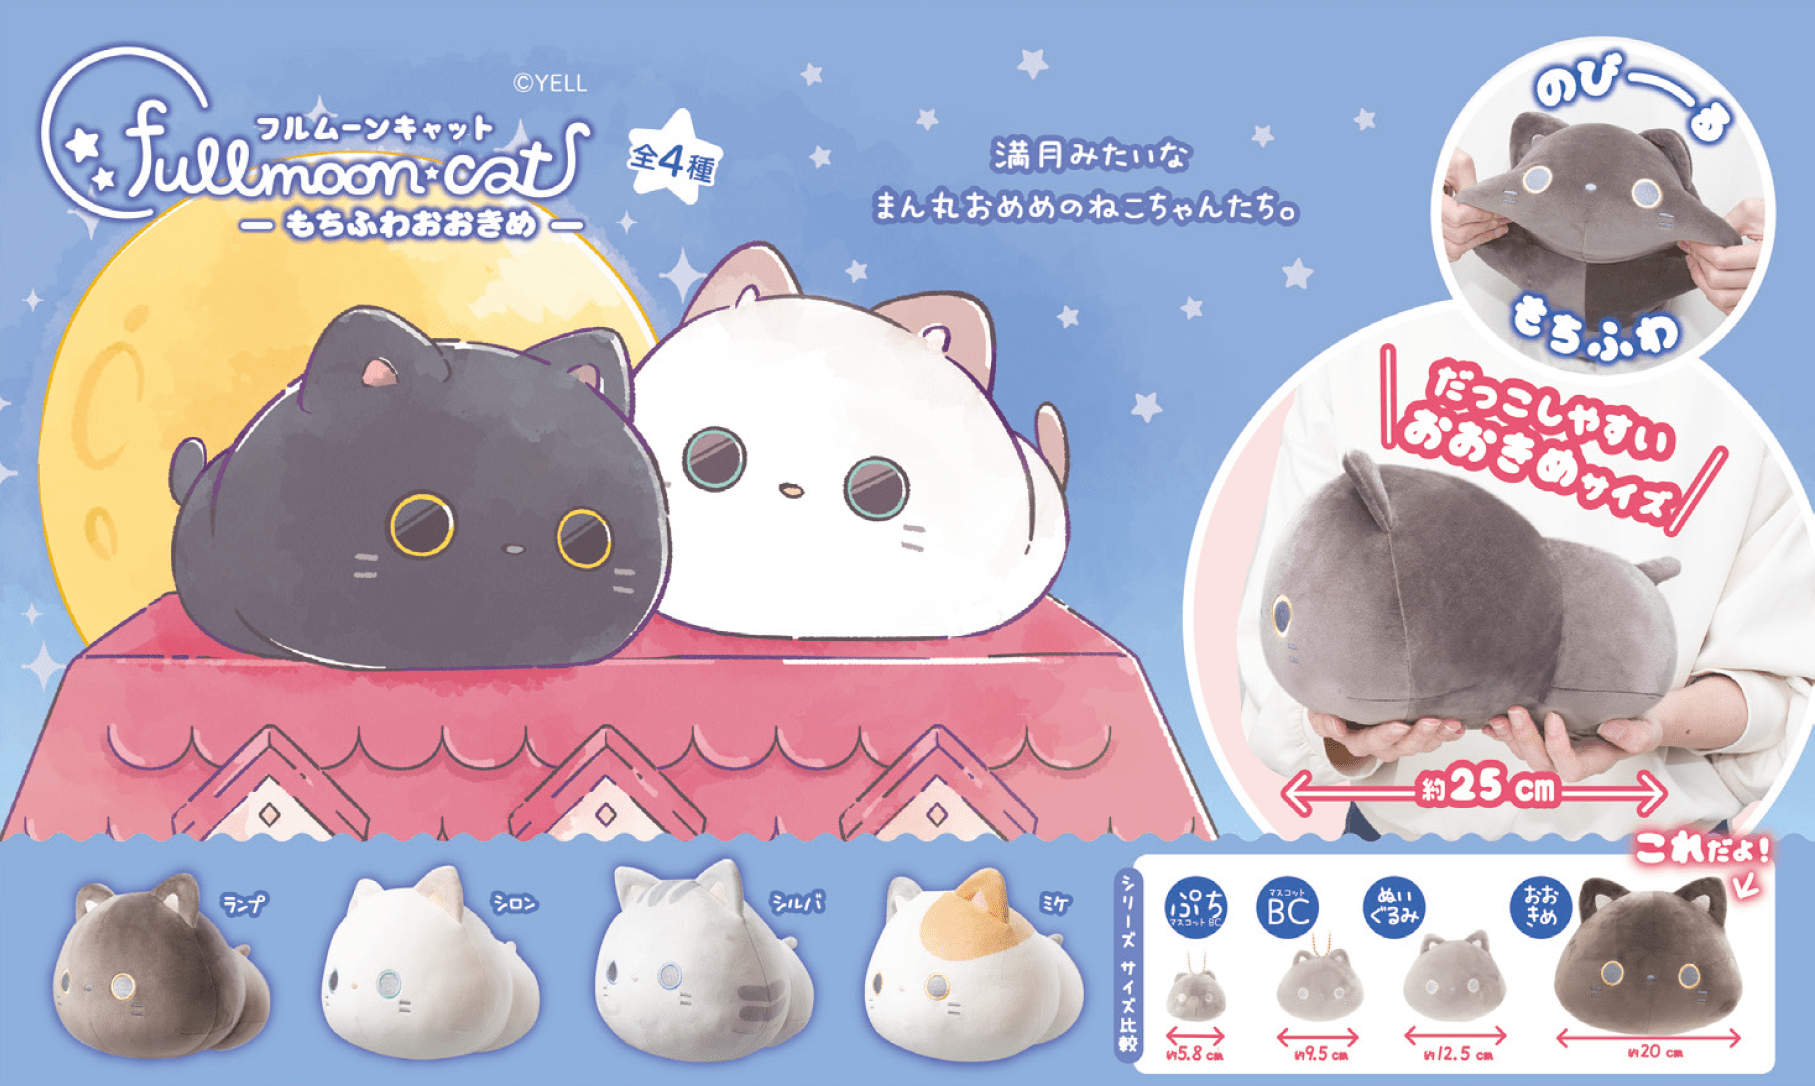 Hakubundo 【Japanese plush】FULLMOON CATS MOCHIFUWA Plush Large Kawaii Gifts